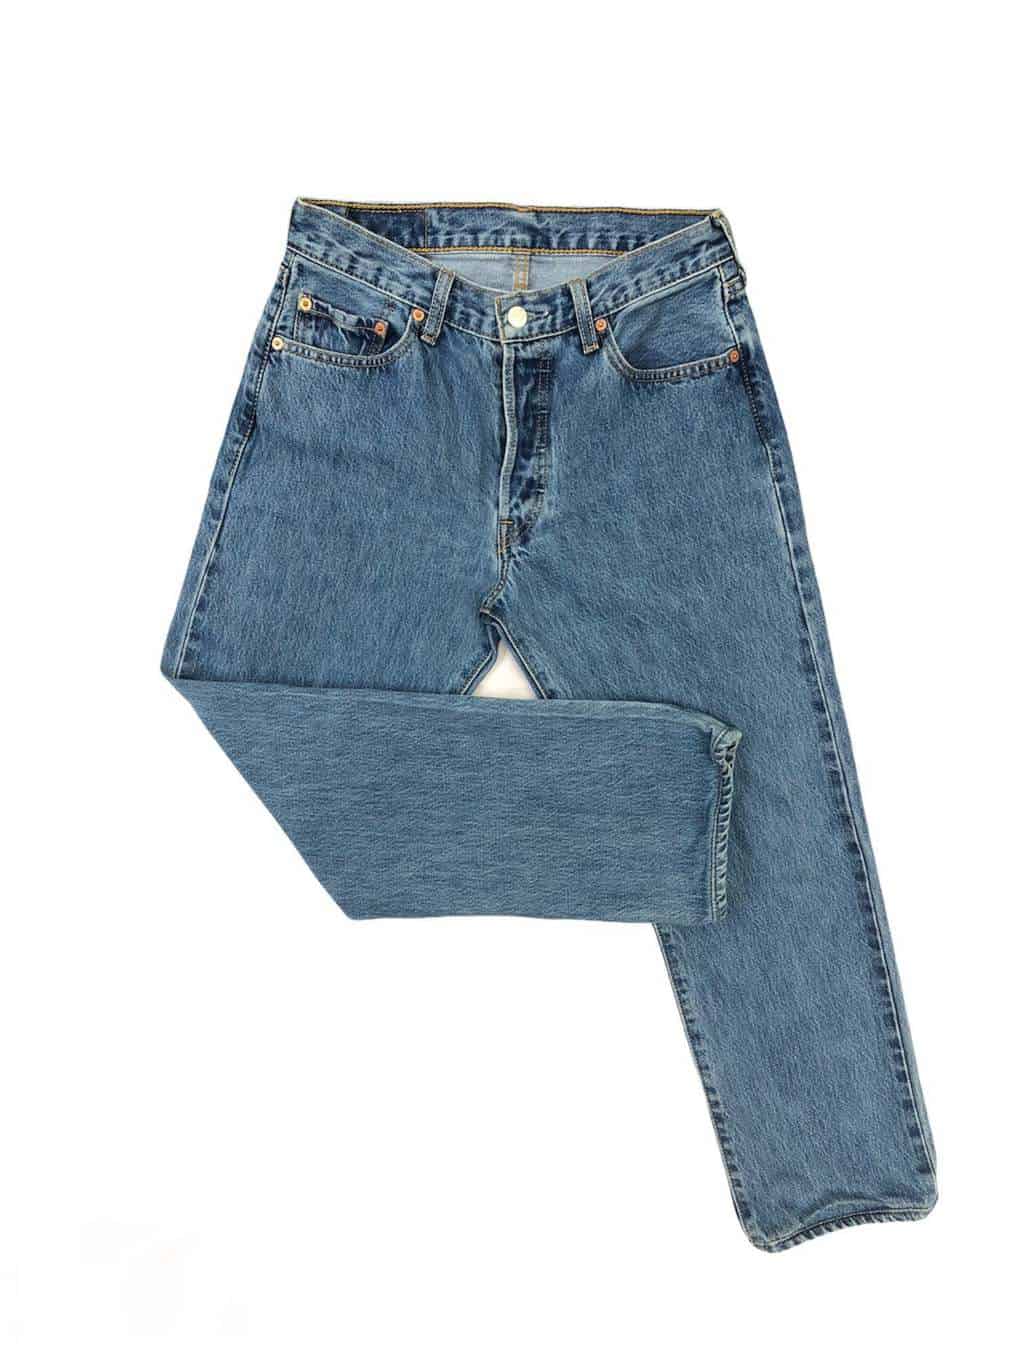 90s Vintage Levis 501 straight leg blue Jeans - W30 x L27 - St Cyr Vintage